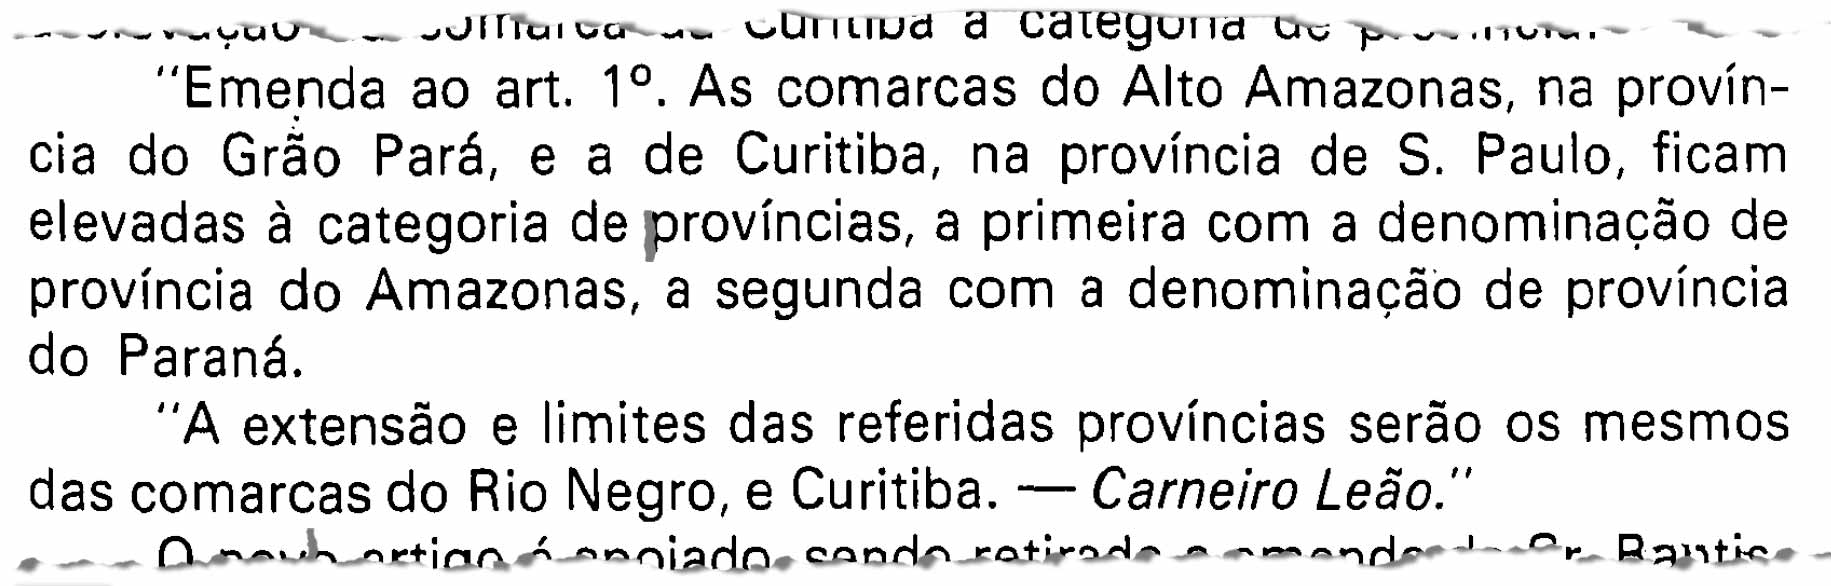 Emenda do senador Carneiro Leão prevê a emancipação simultânea das províncias do Amazonas e do Paraná